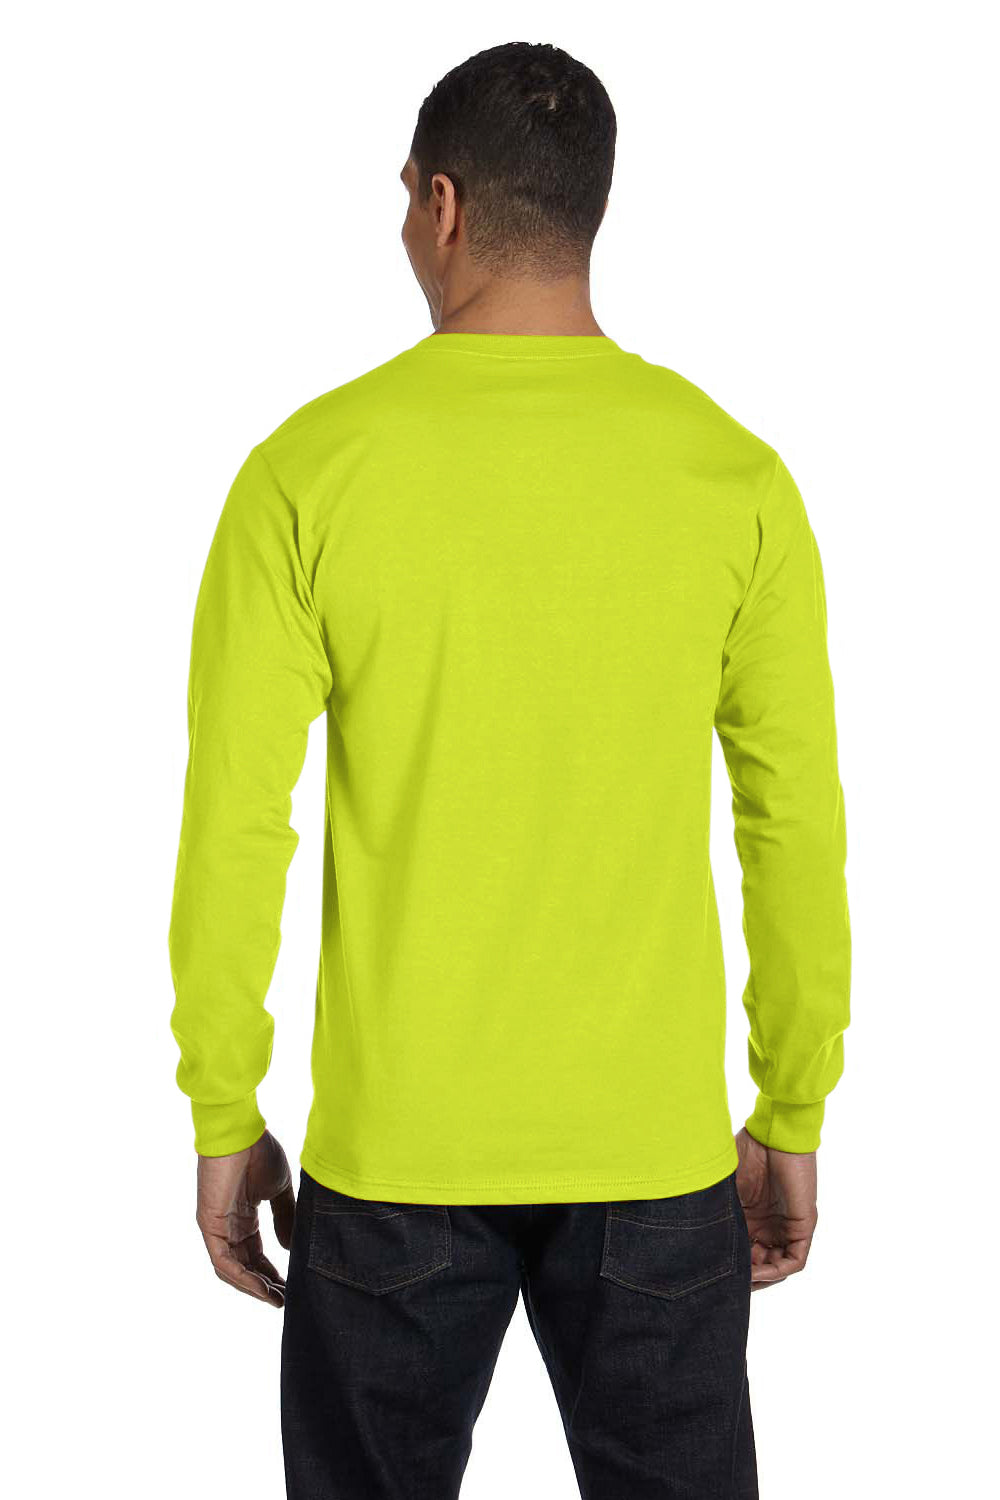 Gildan G840 Mens DryBlend Moisture Wicking Long Sleeve Crewneck T-Shirt Safety Green Back